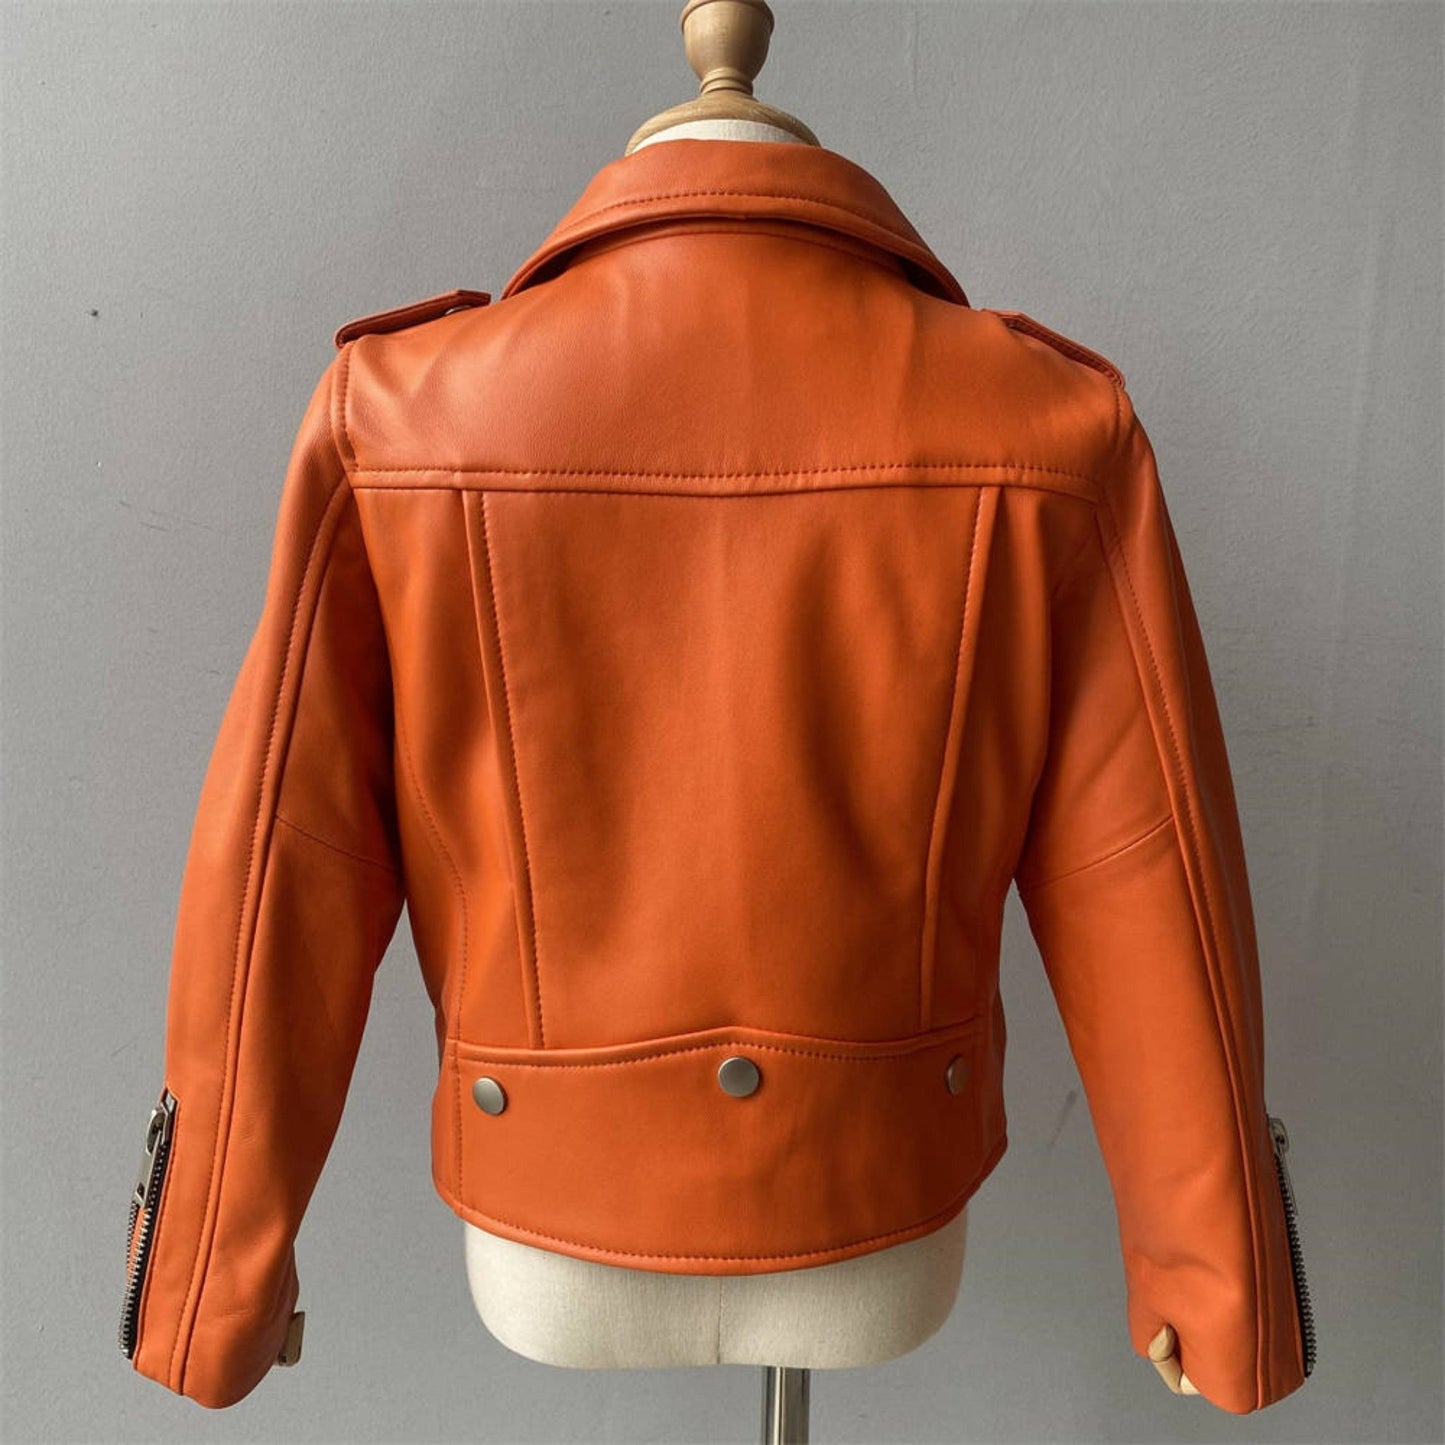 XZD Orange Leather Moto Jacket - Posh Tomboy